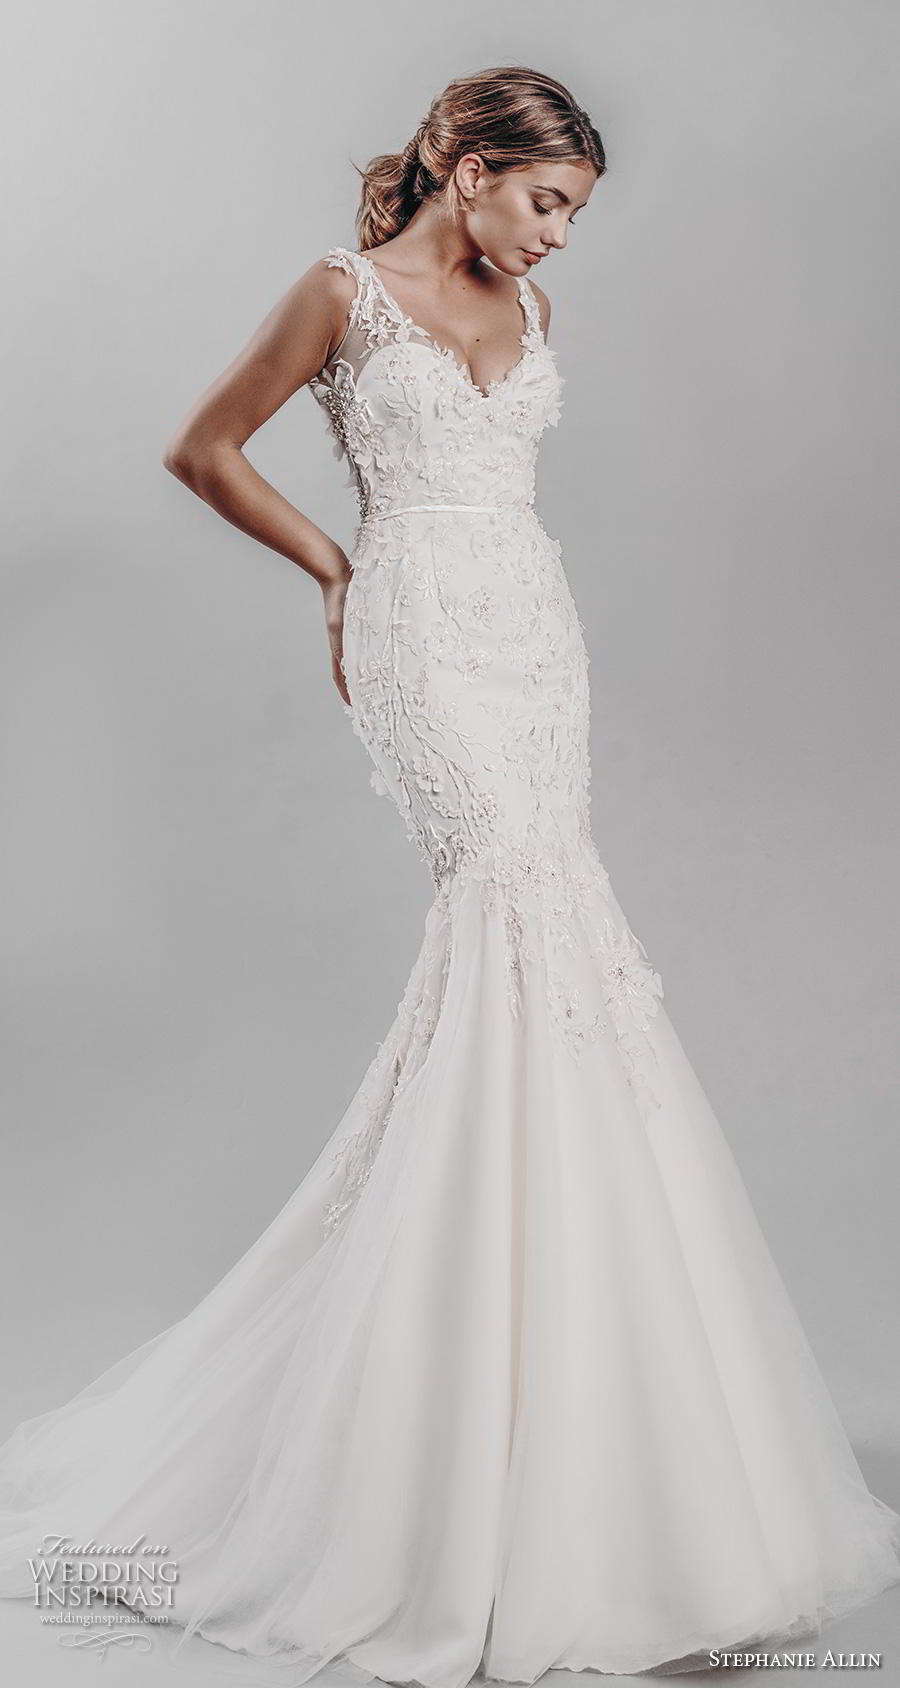 stephanie allin 2019 bridal sleeveless v neck heavily embellished bodice elegant mermaid wedding dress v back medium train (15) mv